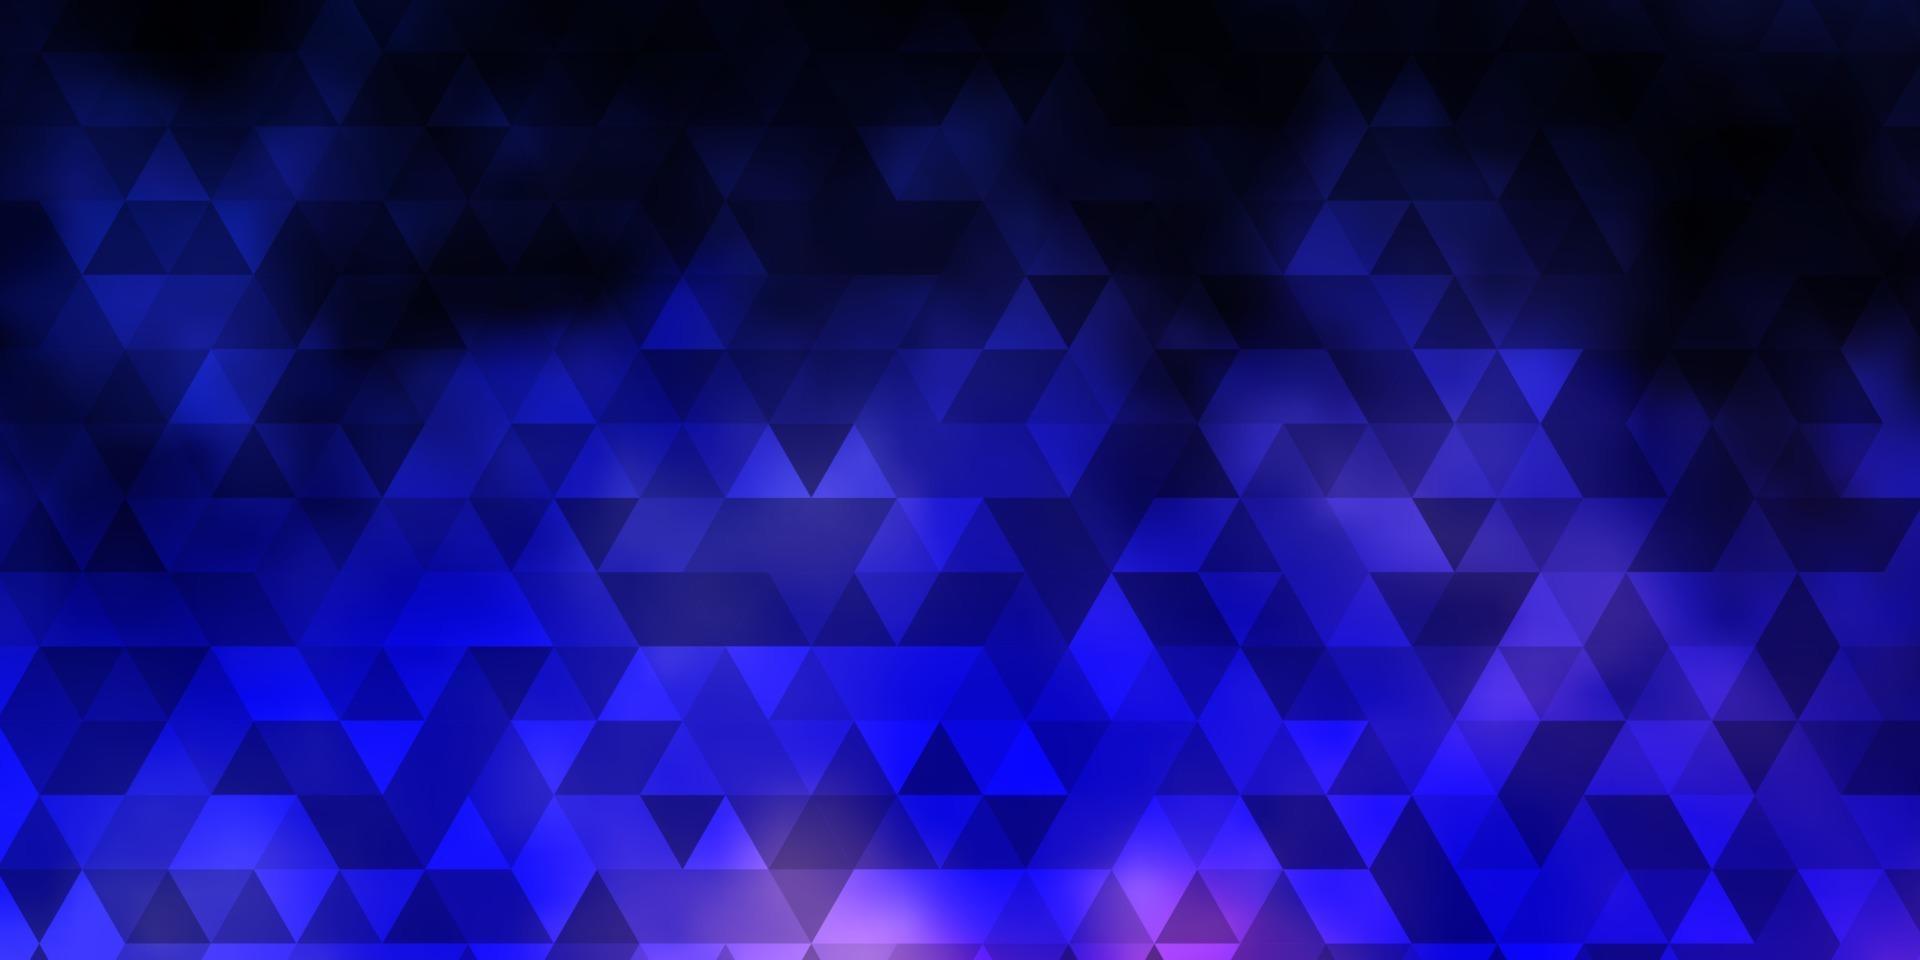 sfondo vettoriale viola scuro con stile poligonale.